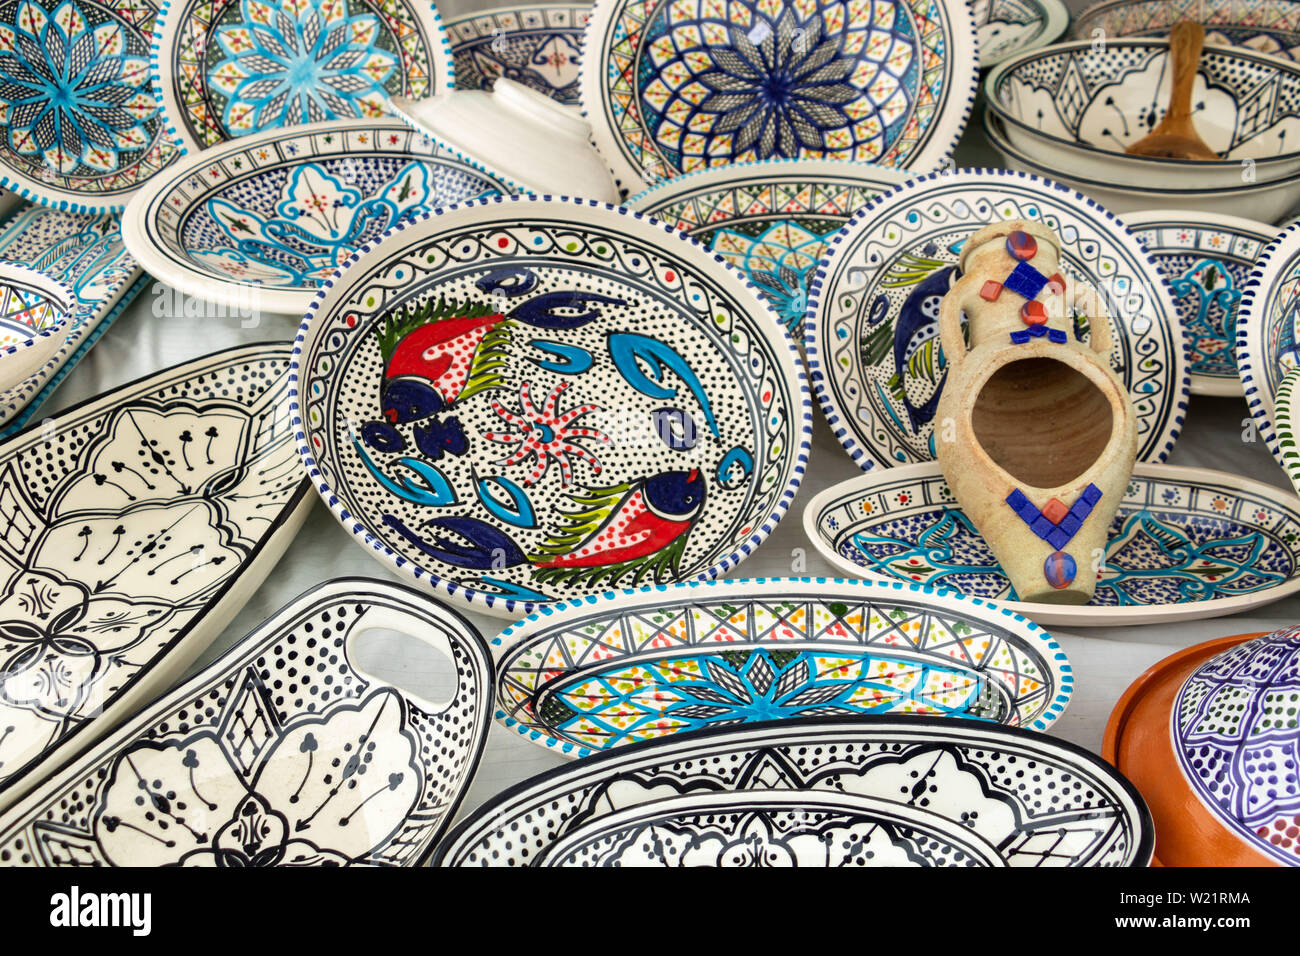 La vaisselle en céramique décorative, de l'artisanat méditerranéen Banque D'Images